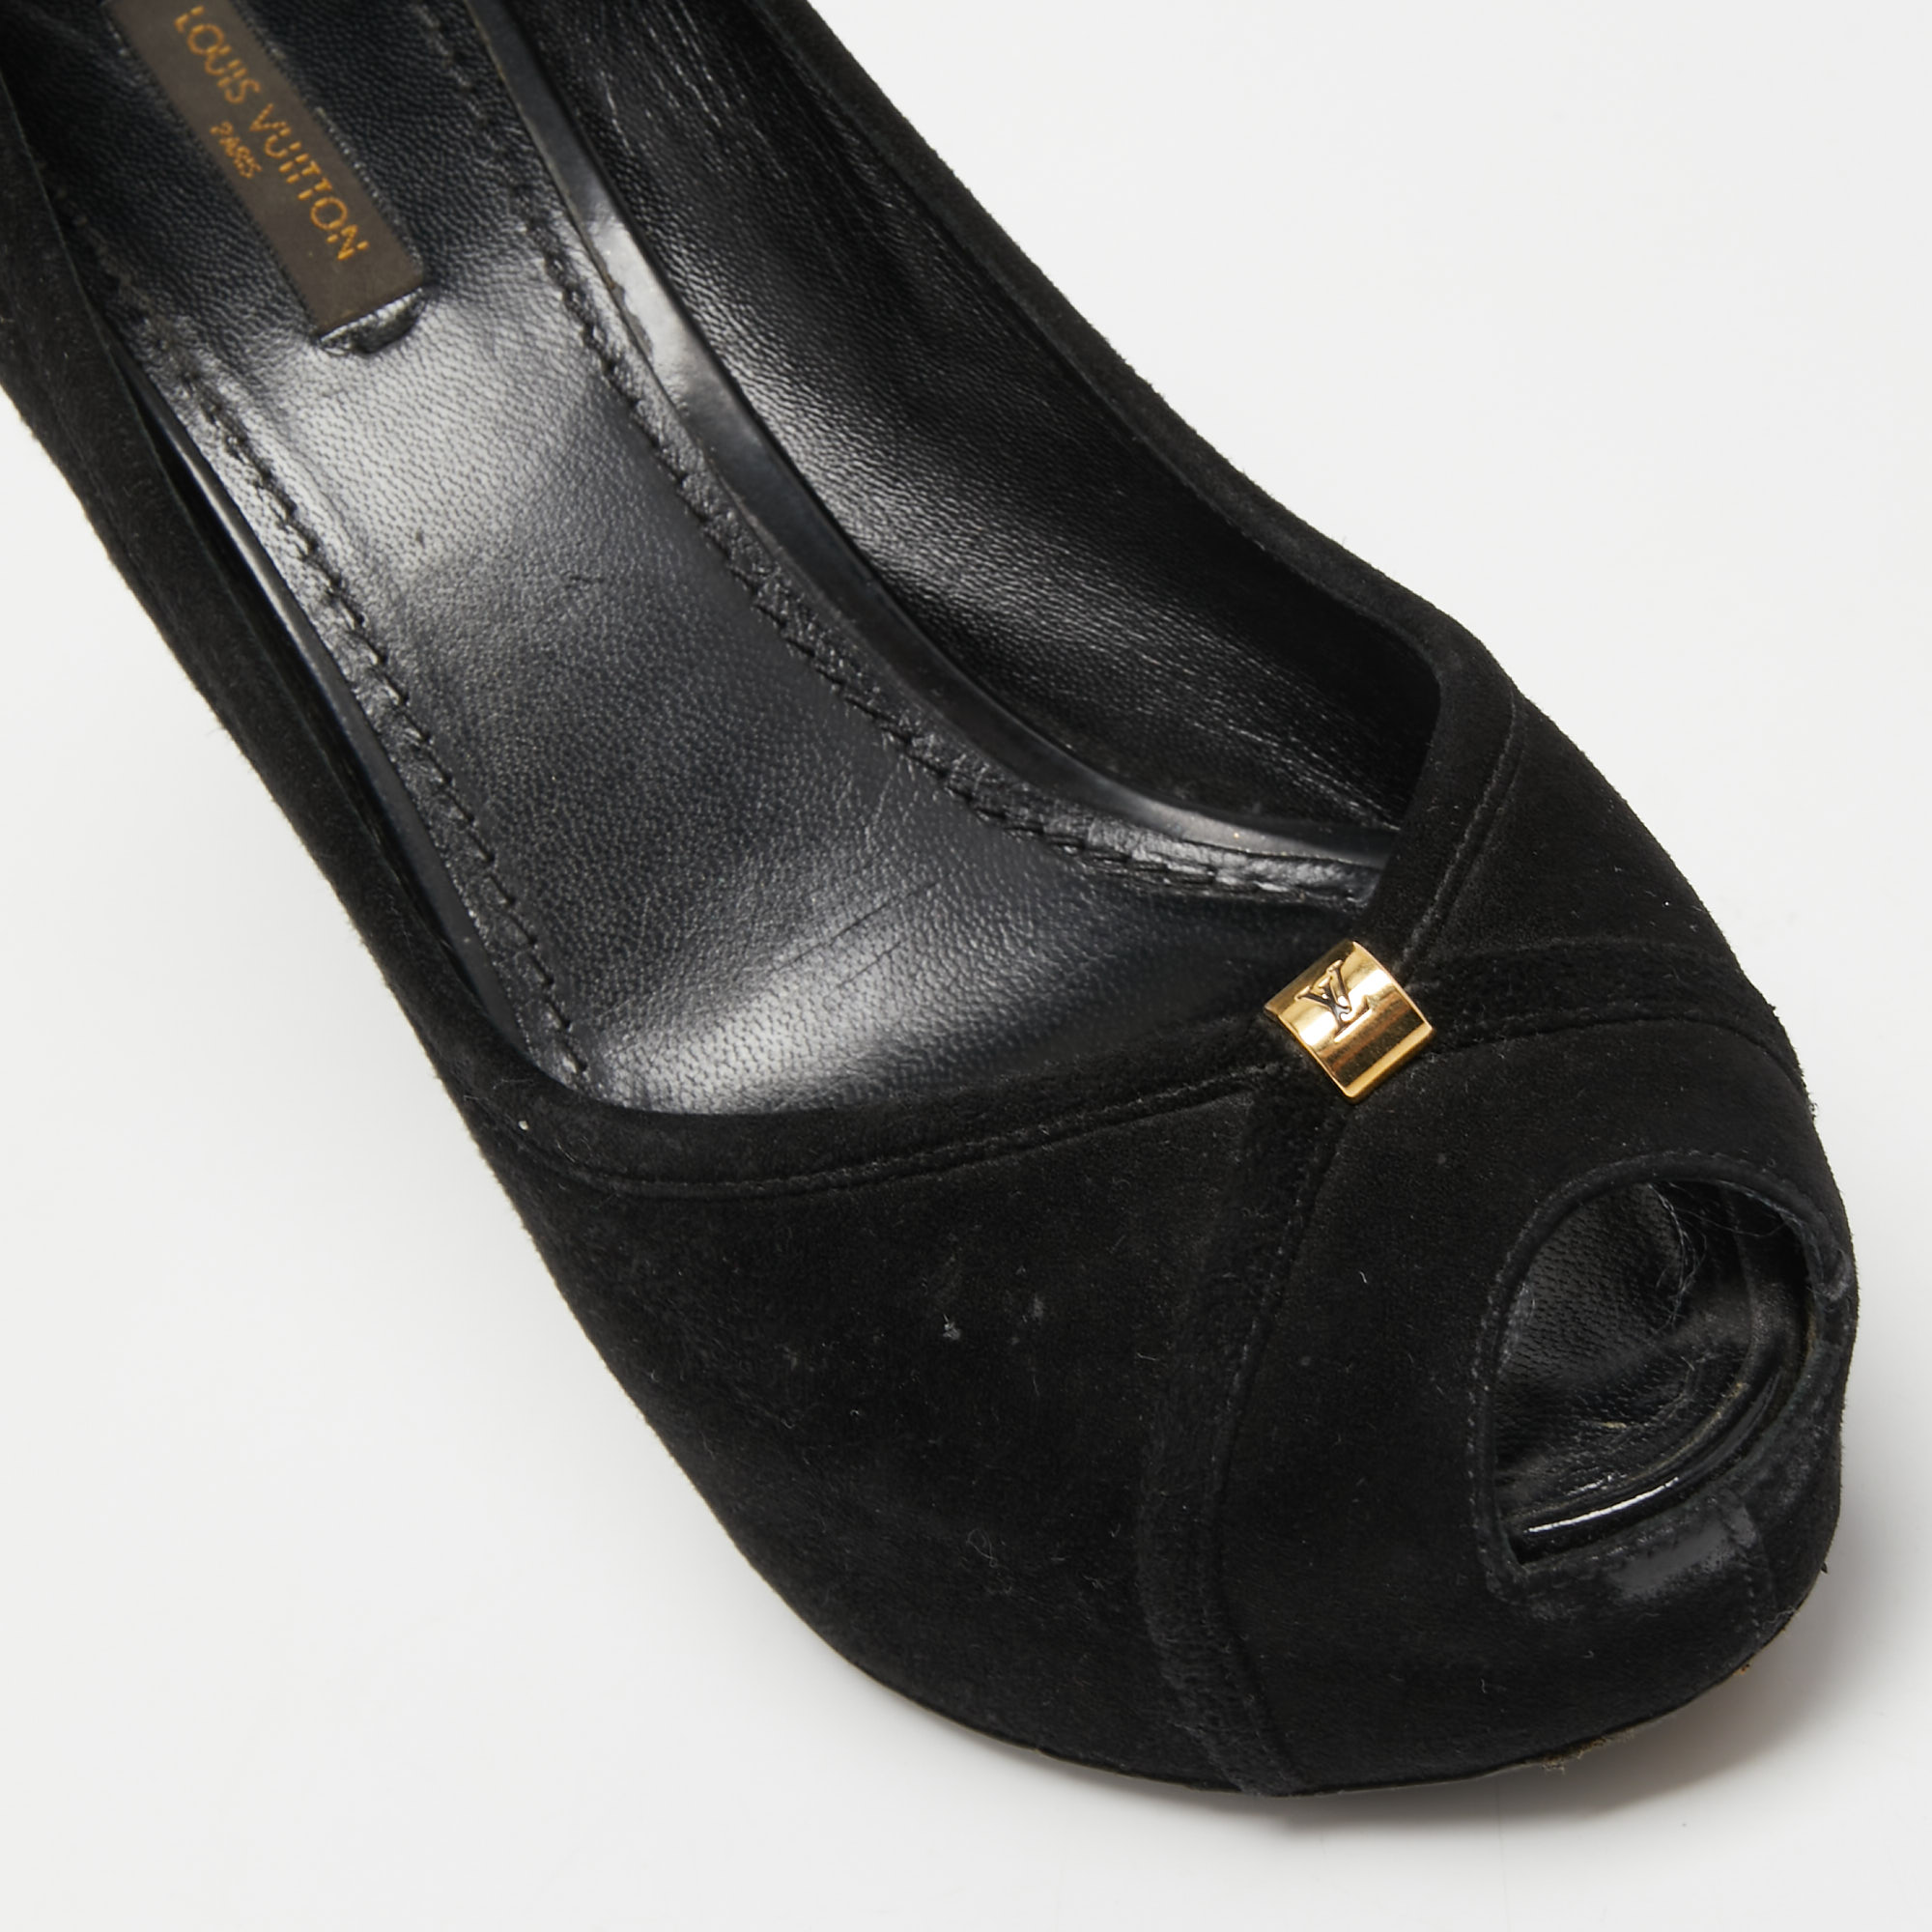 Louis Vuitton Black Suede Peep Toe Pumps Size 39